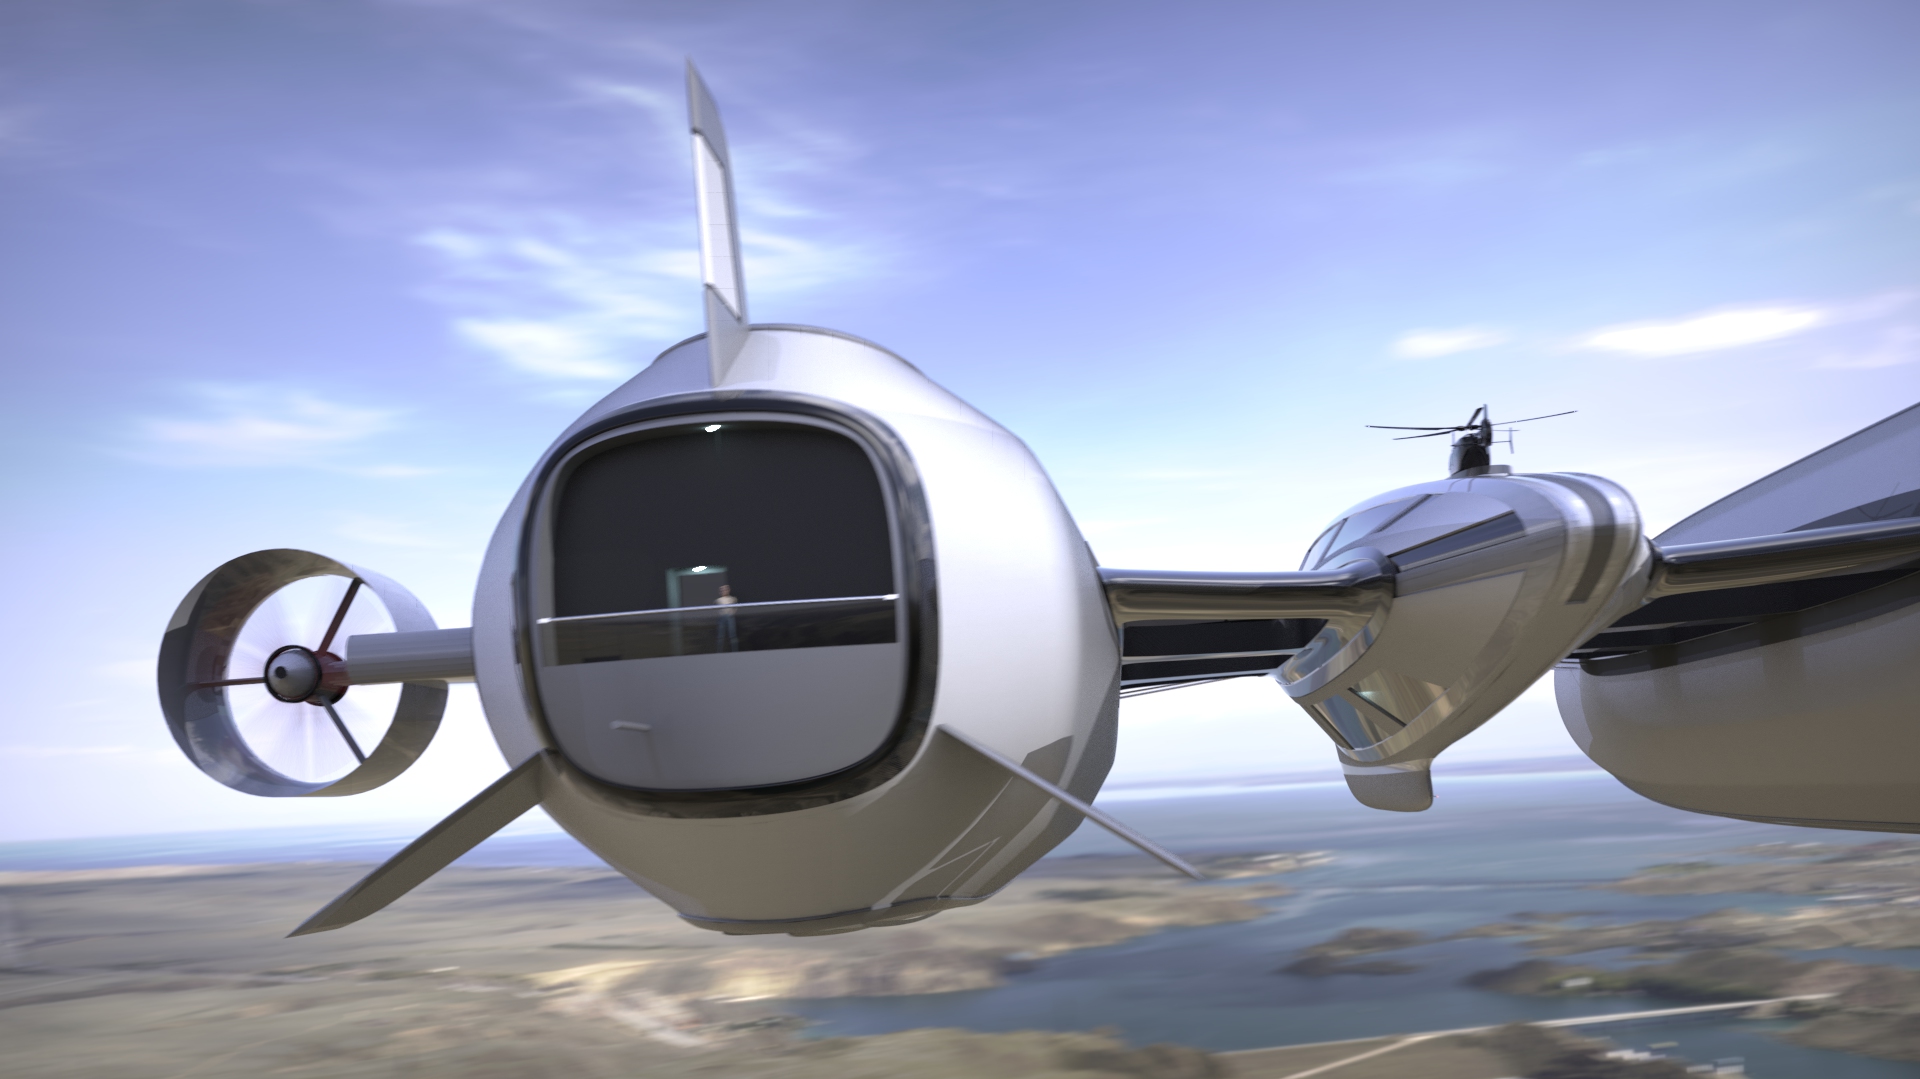 Il concept 'Sky Yacht' elaborato dallo studio Lazzarini Design per una mobilità aerea e acquatica sostenibile: il motore e le cabine